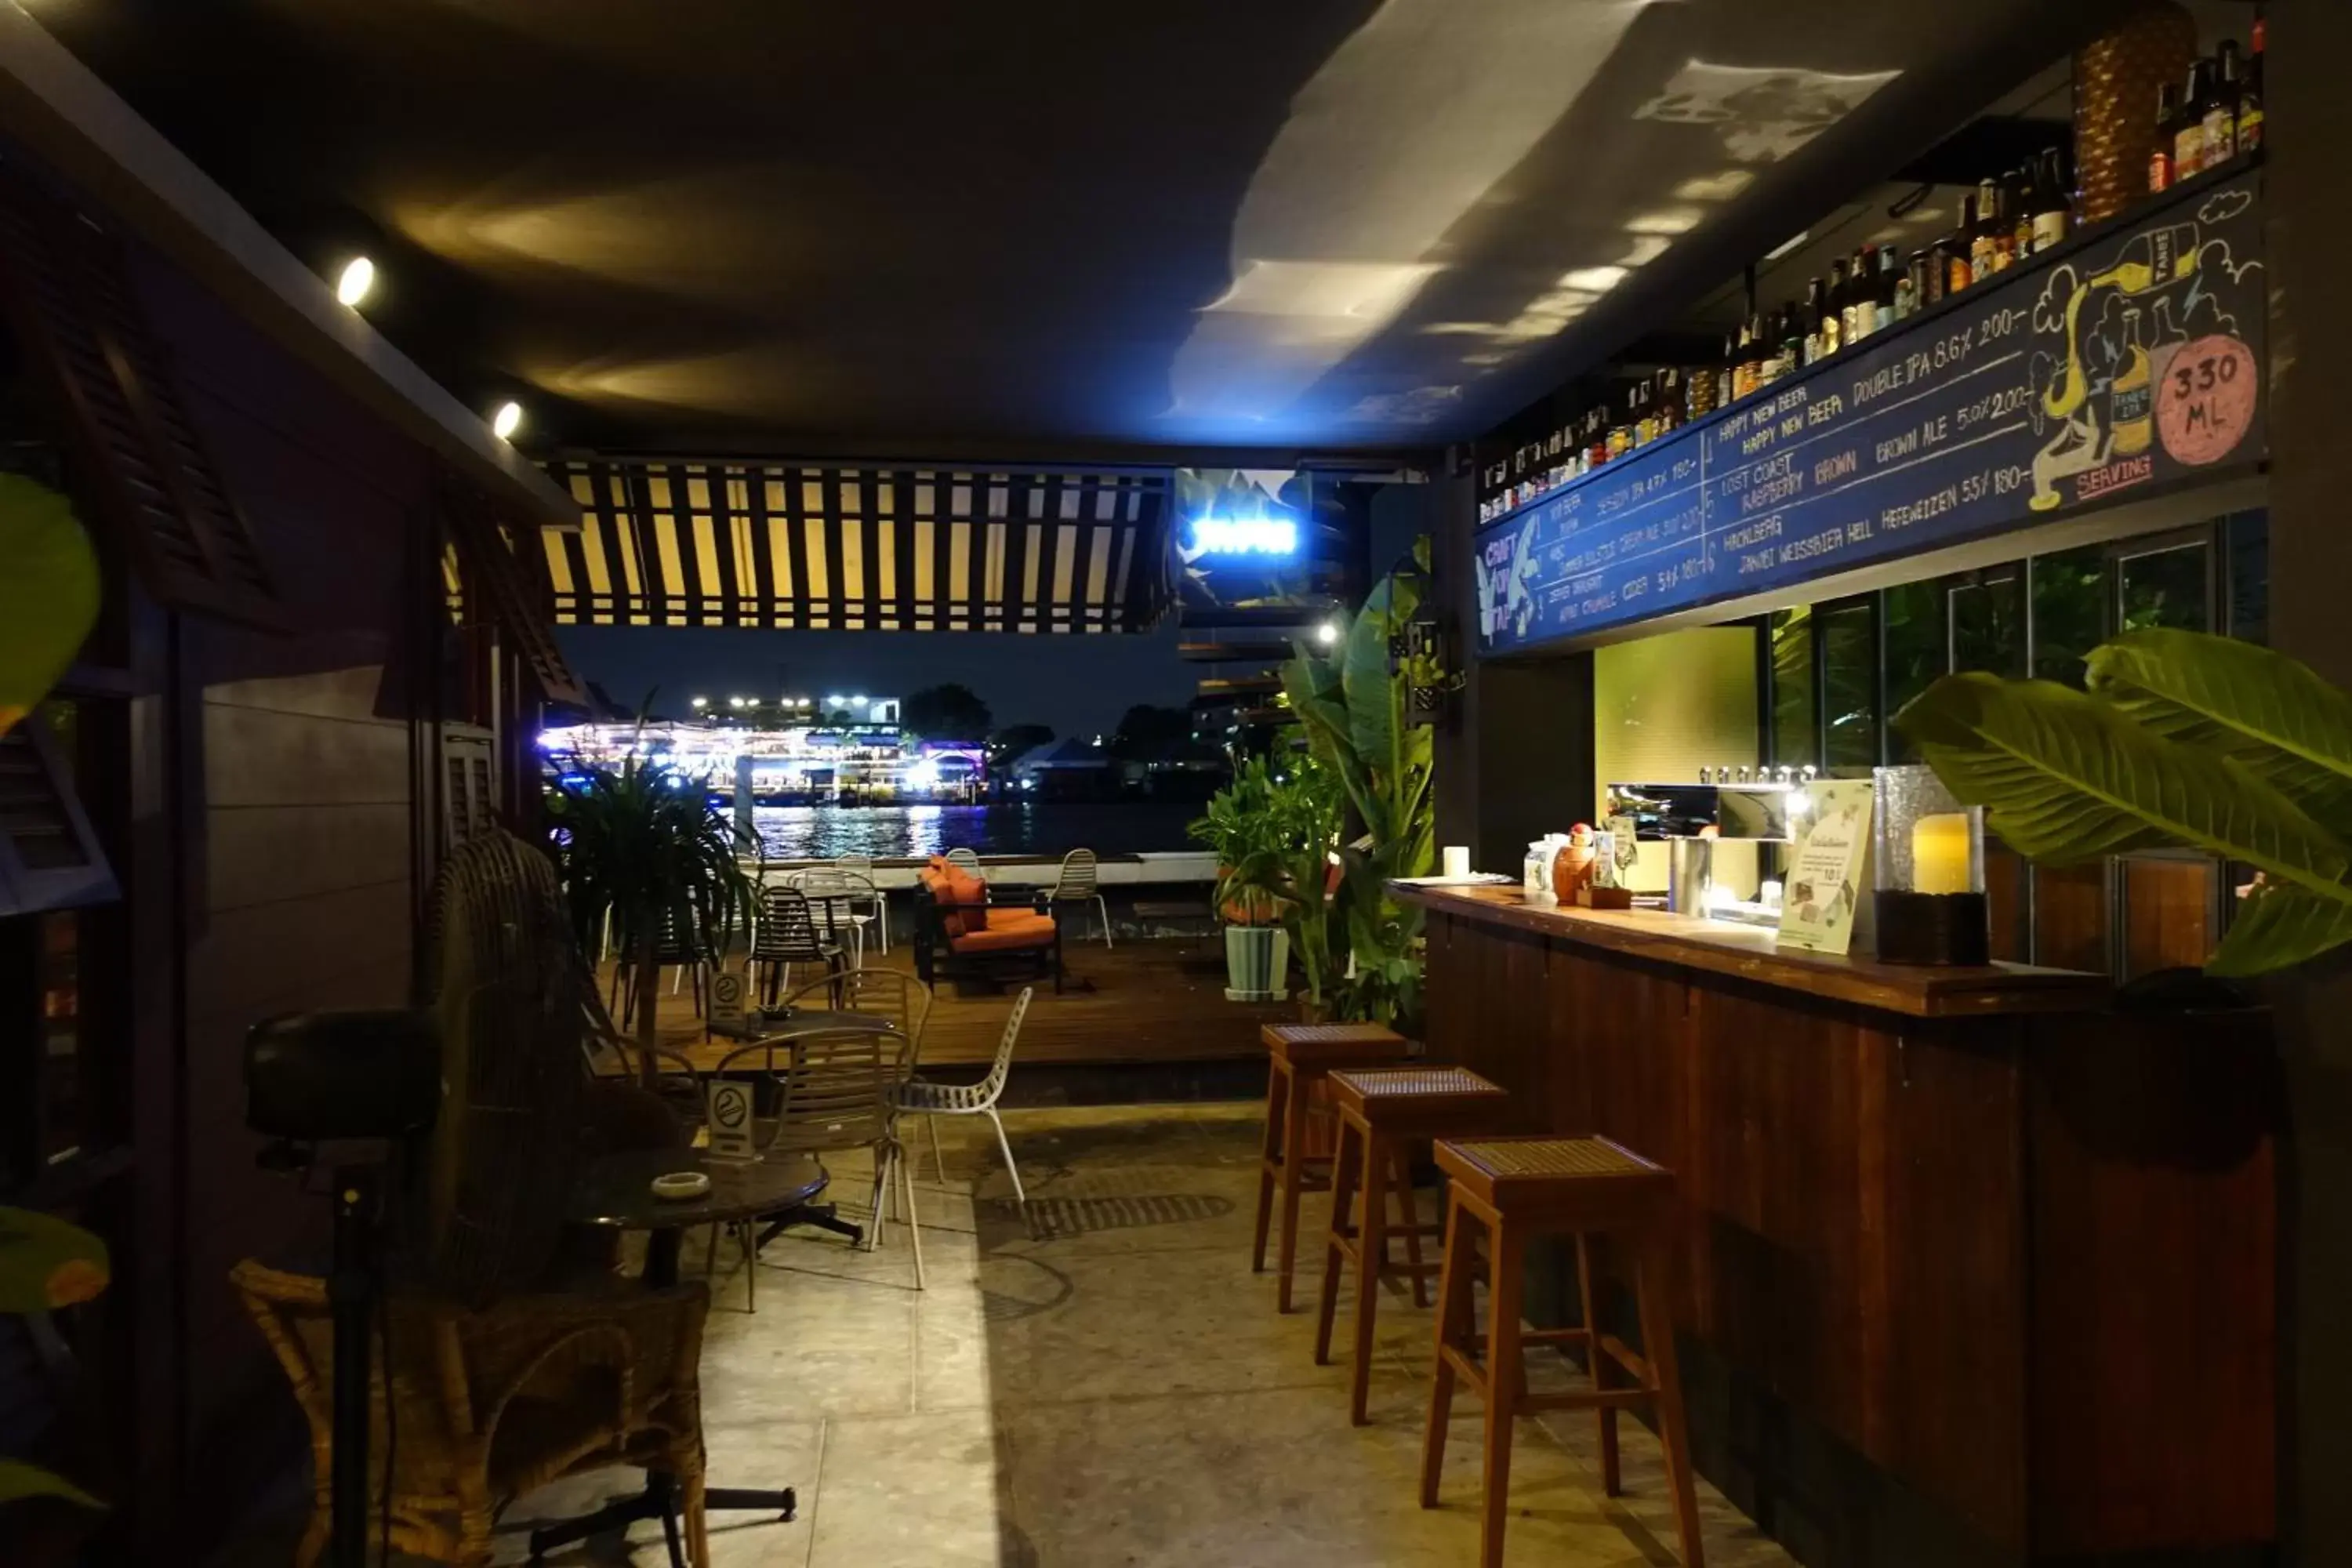 Lounge or bar, Restaurant/Places to Eat in Baan Wanglang Riverside, Bangkok